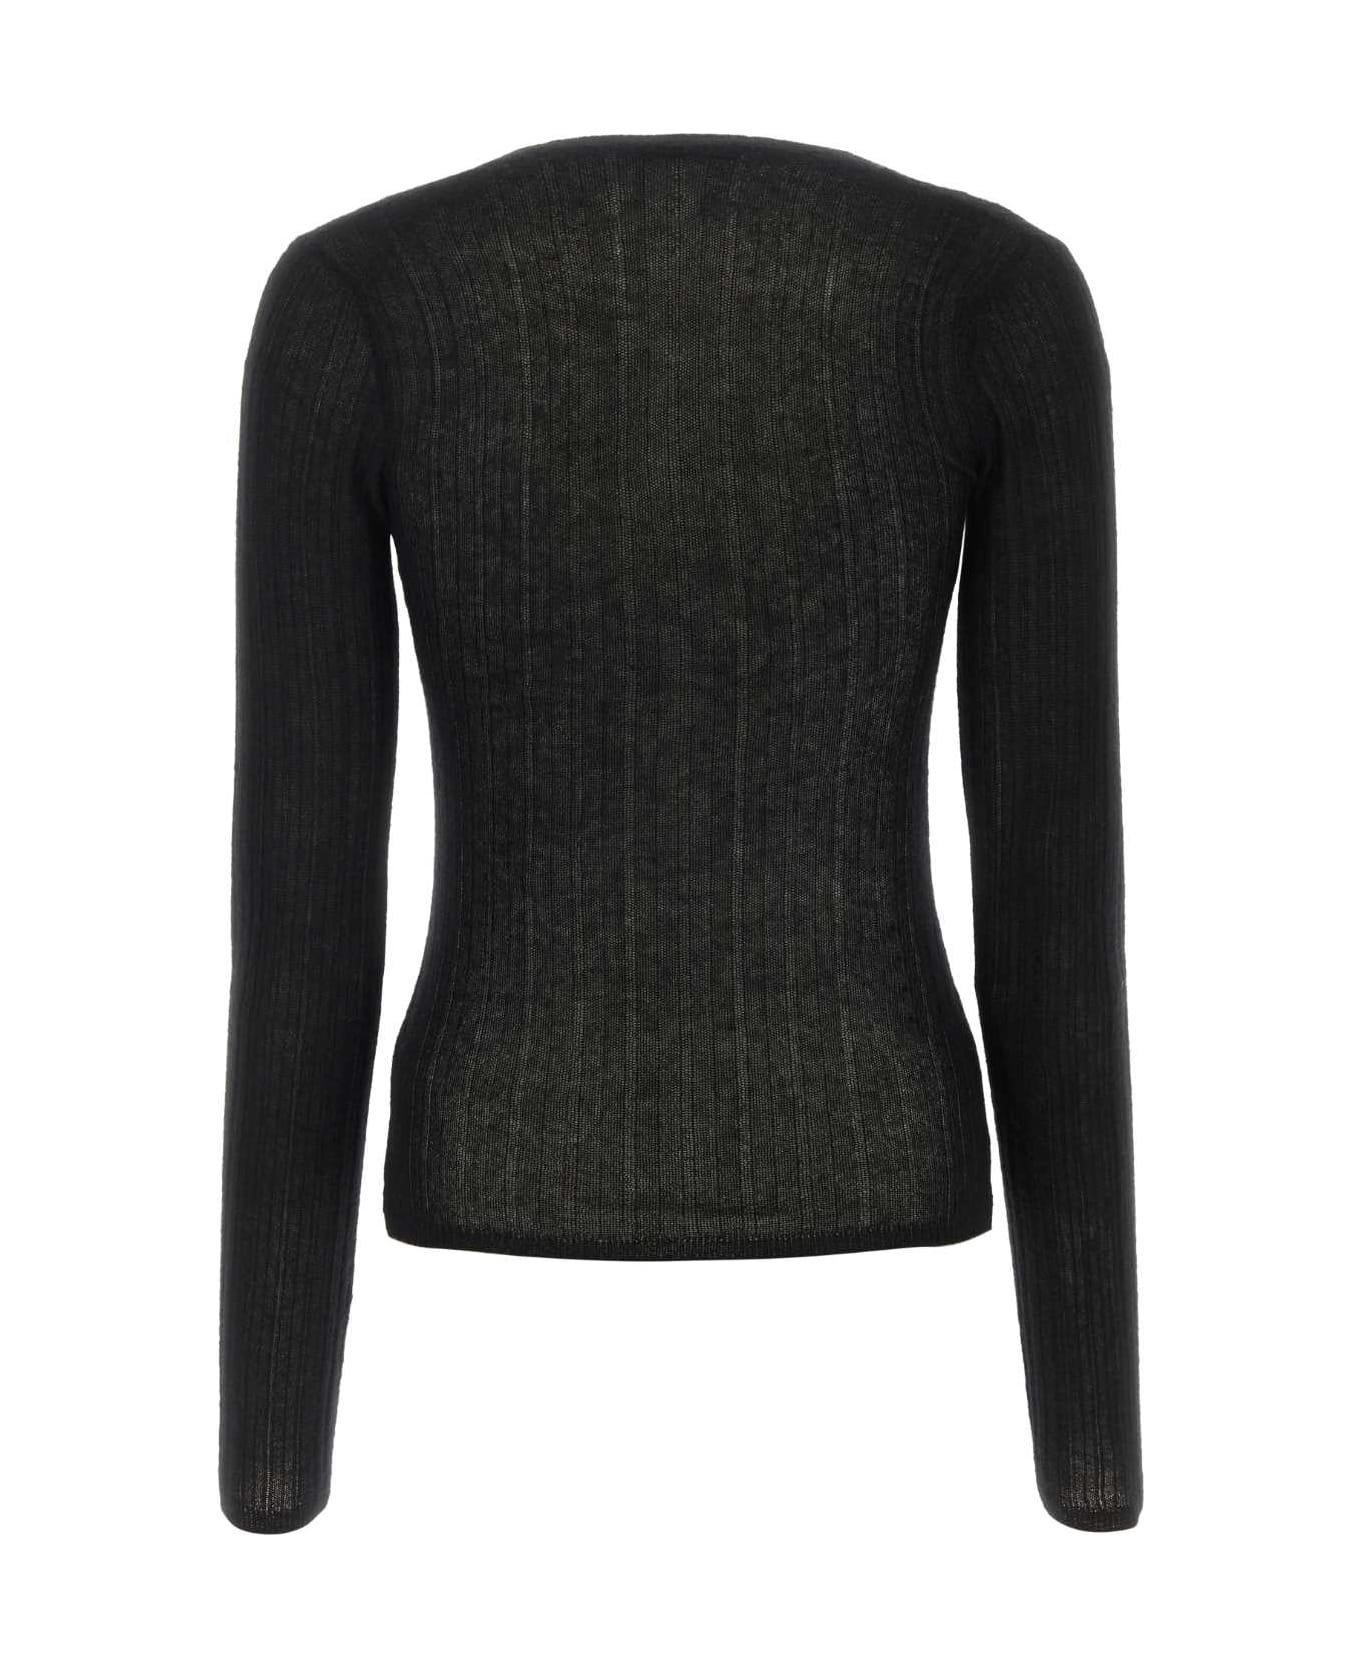 Durazzi Milano Black Cashmere Sweater - BLACK